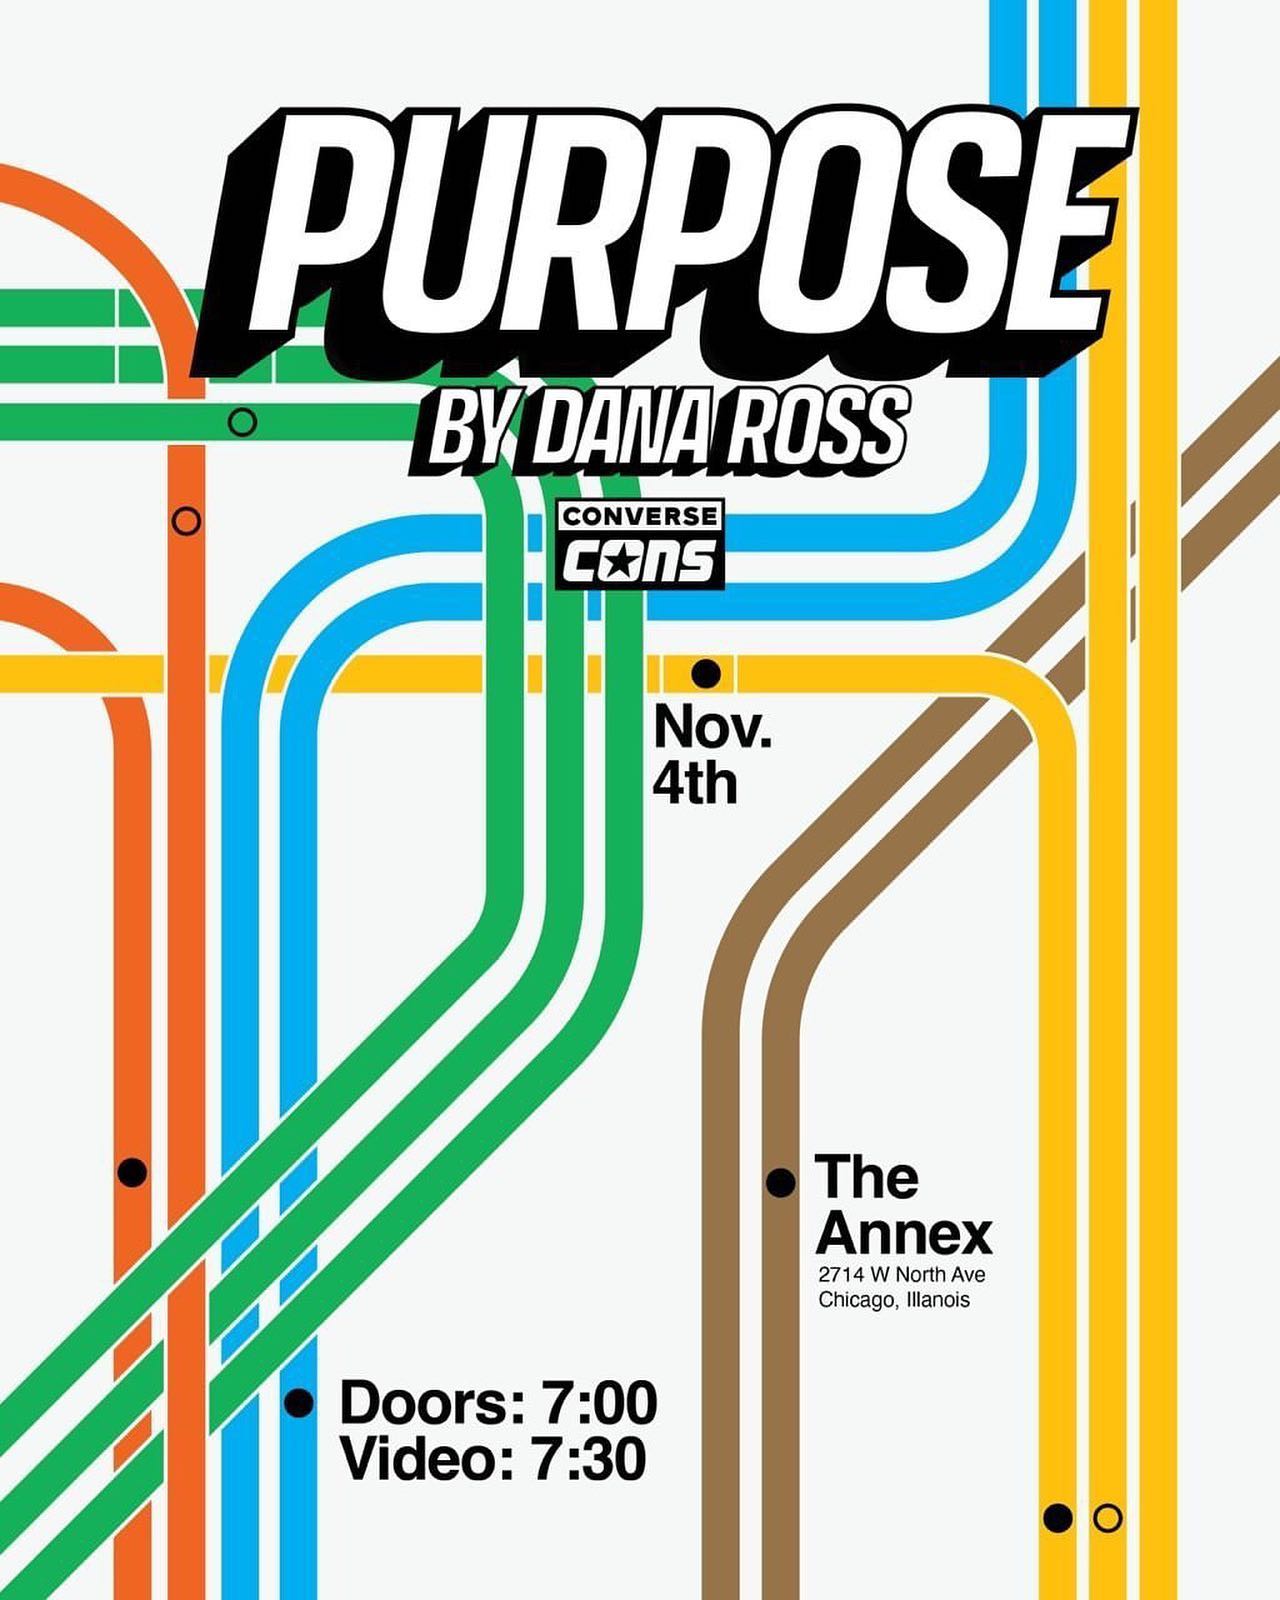 Purpose cover